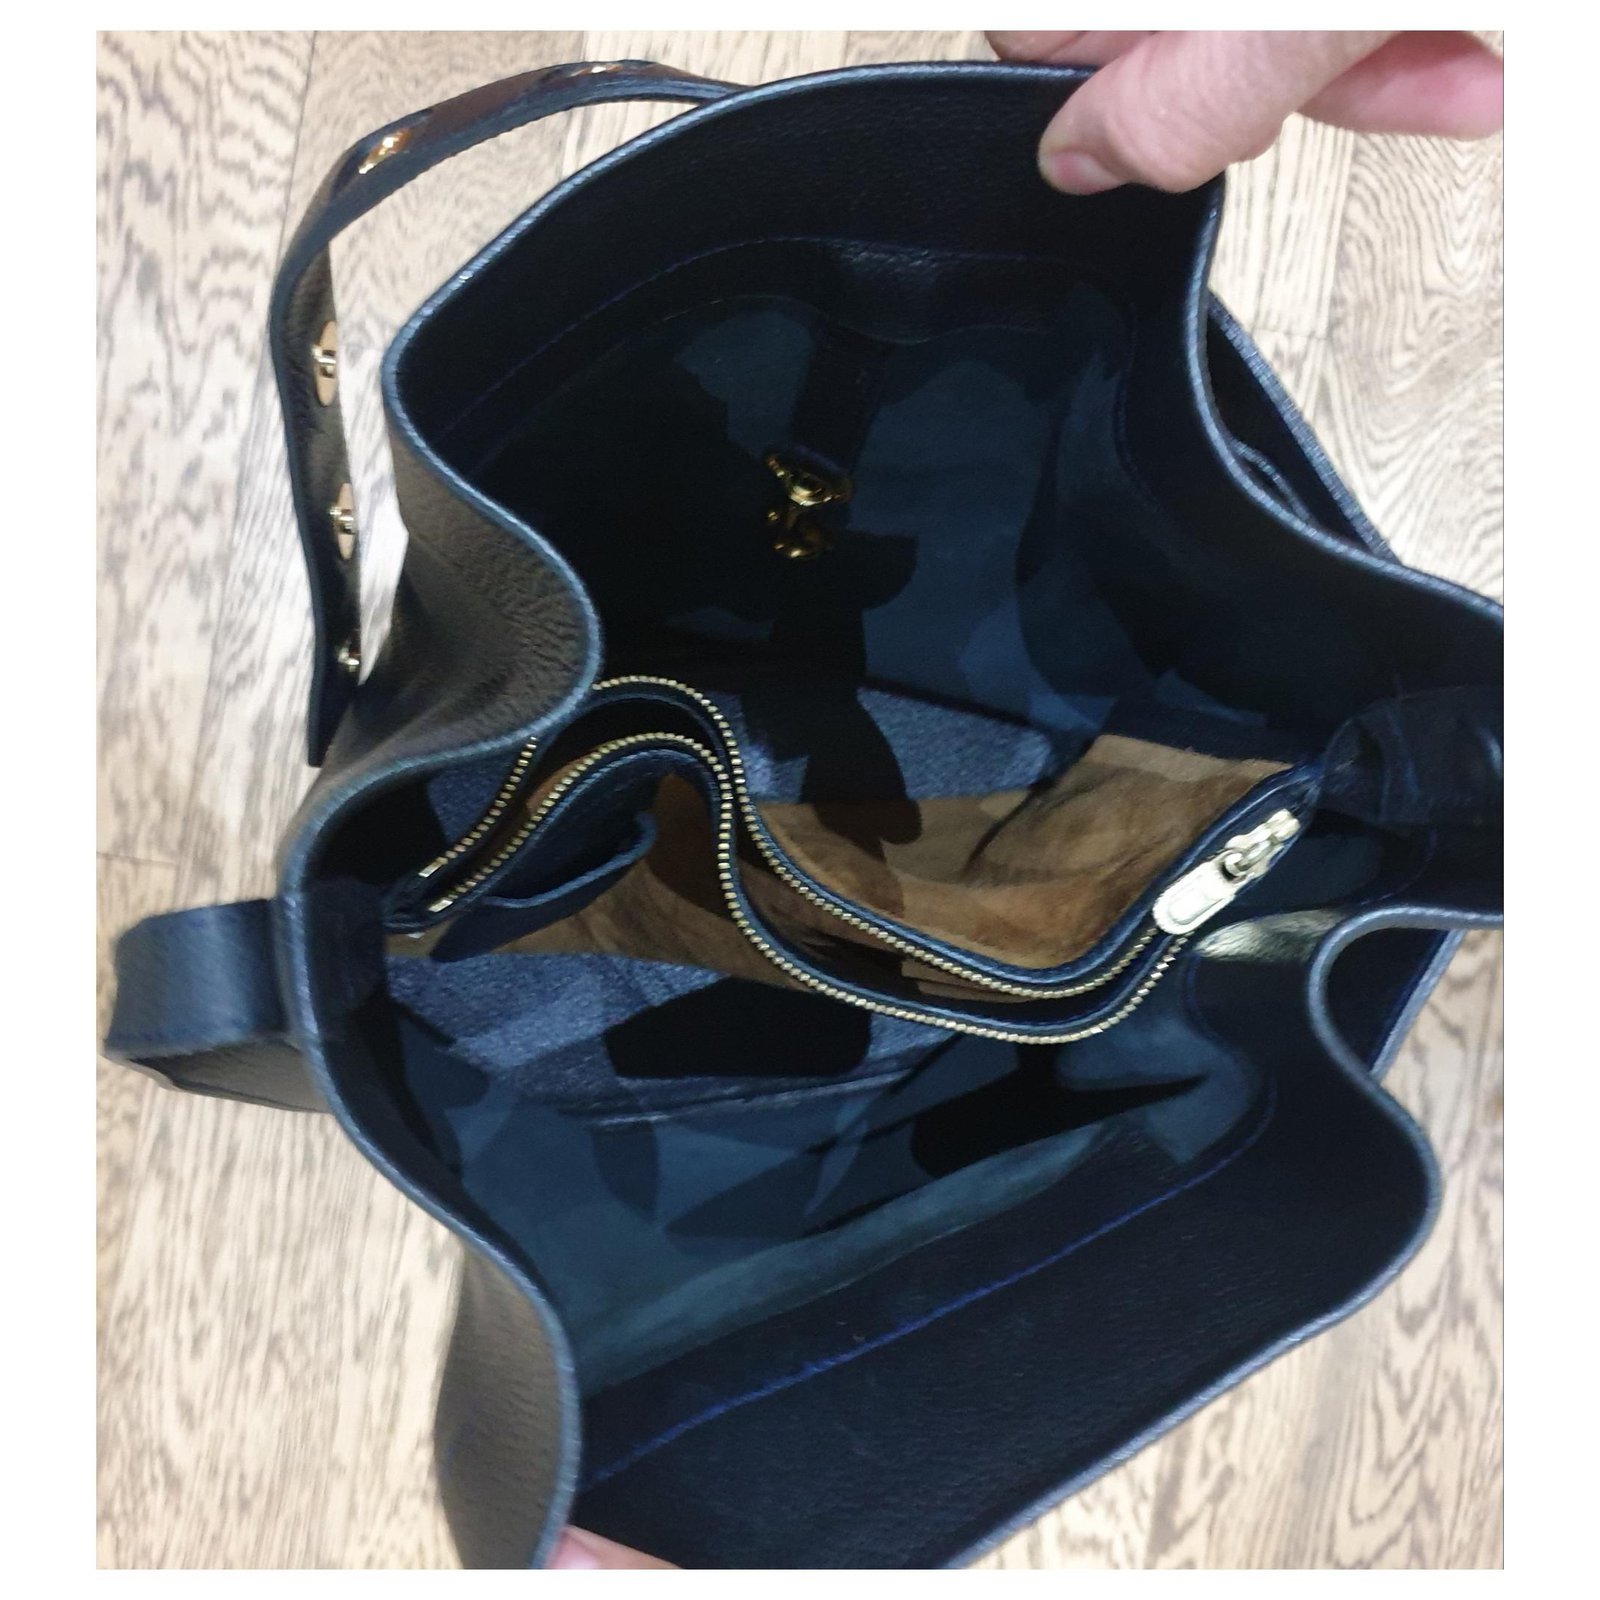 Delvaux Leather Ecole Bucket Bag - Black Shoulder Bags, Handbags - DVX22729